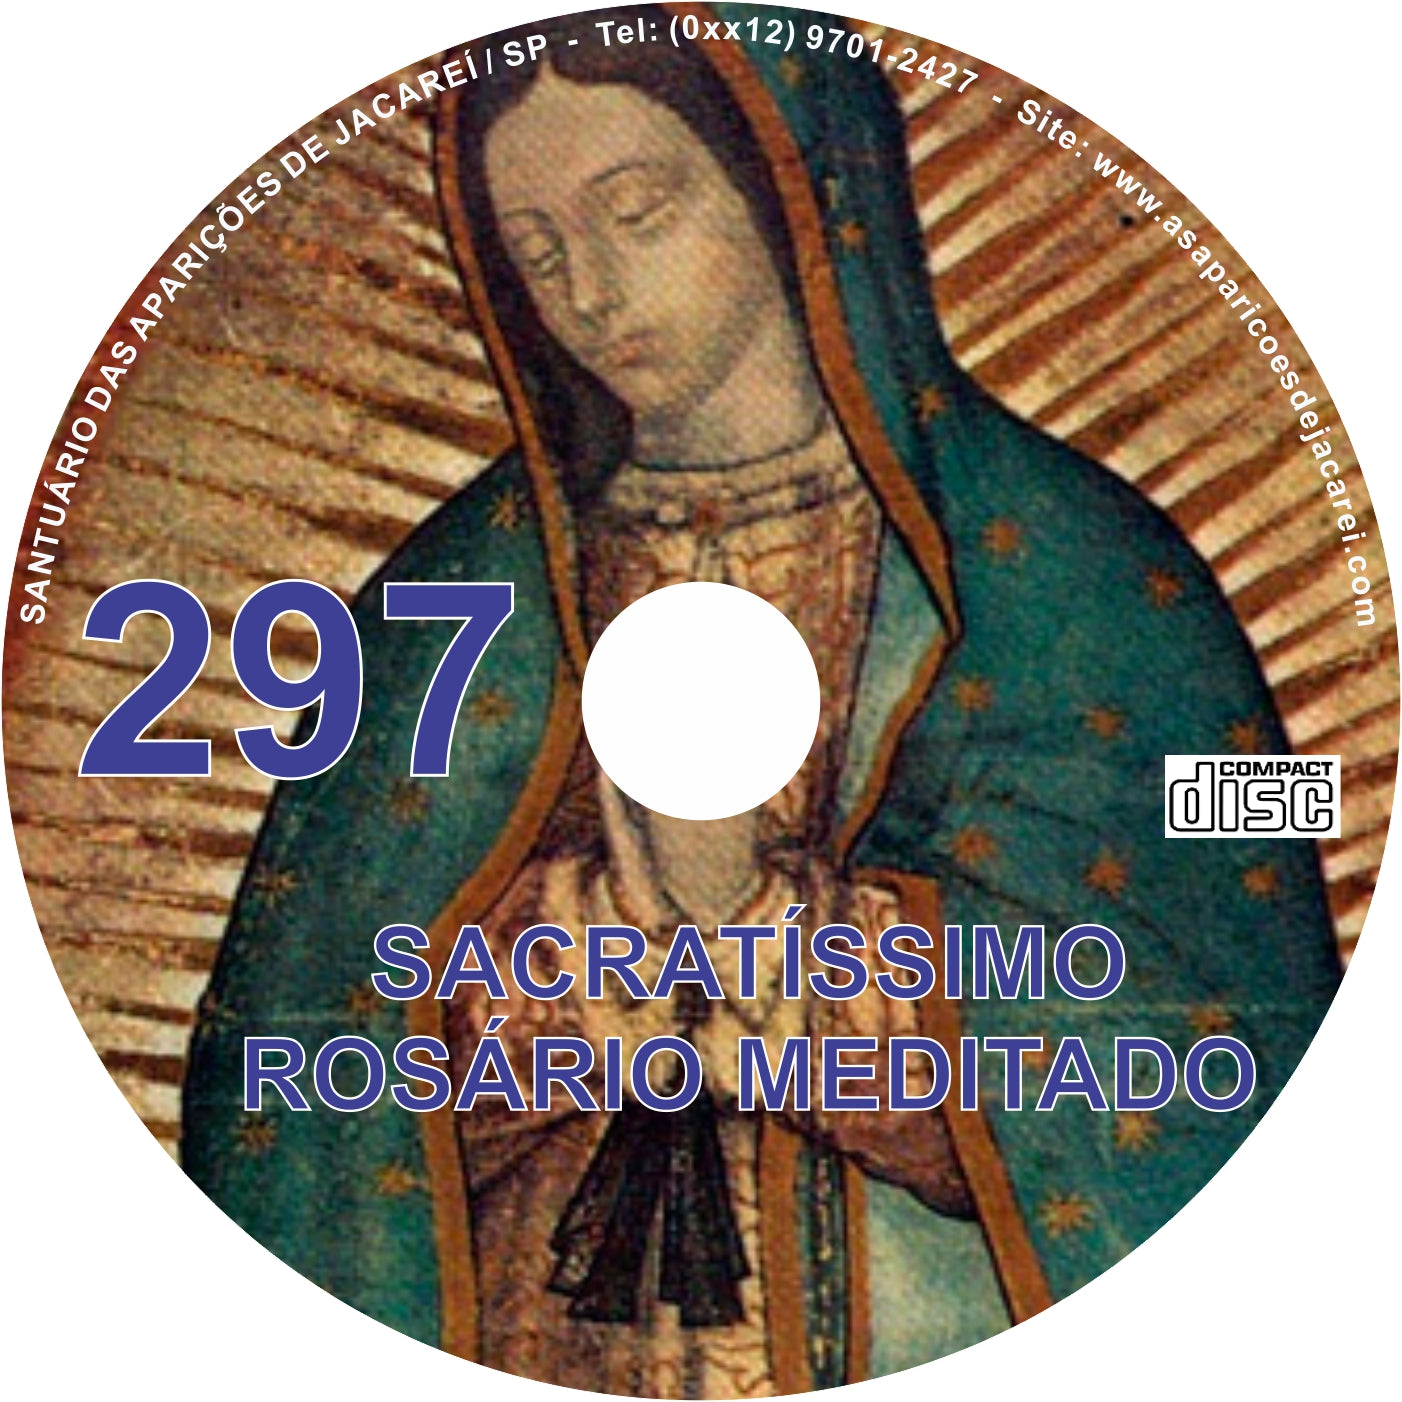 CD Rosário Meditado 297